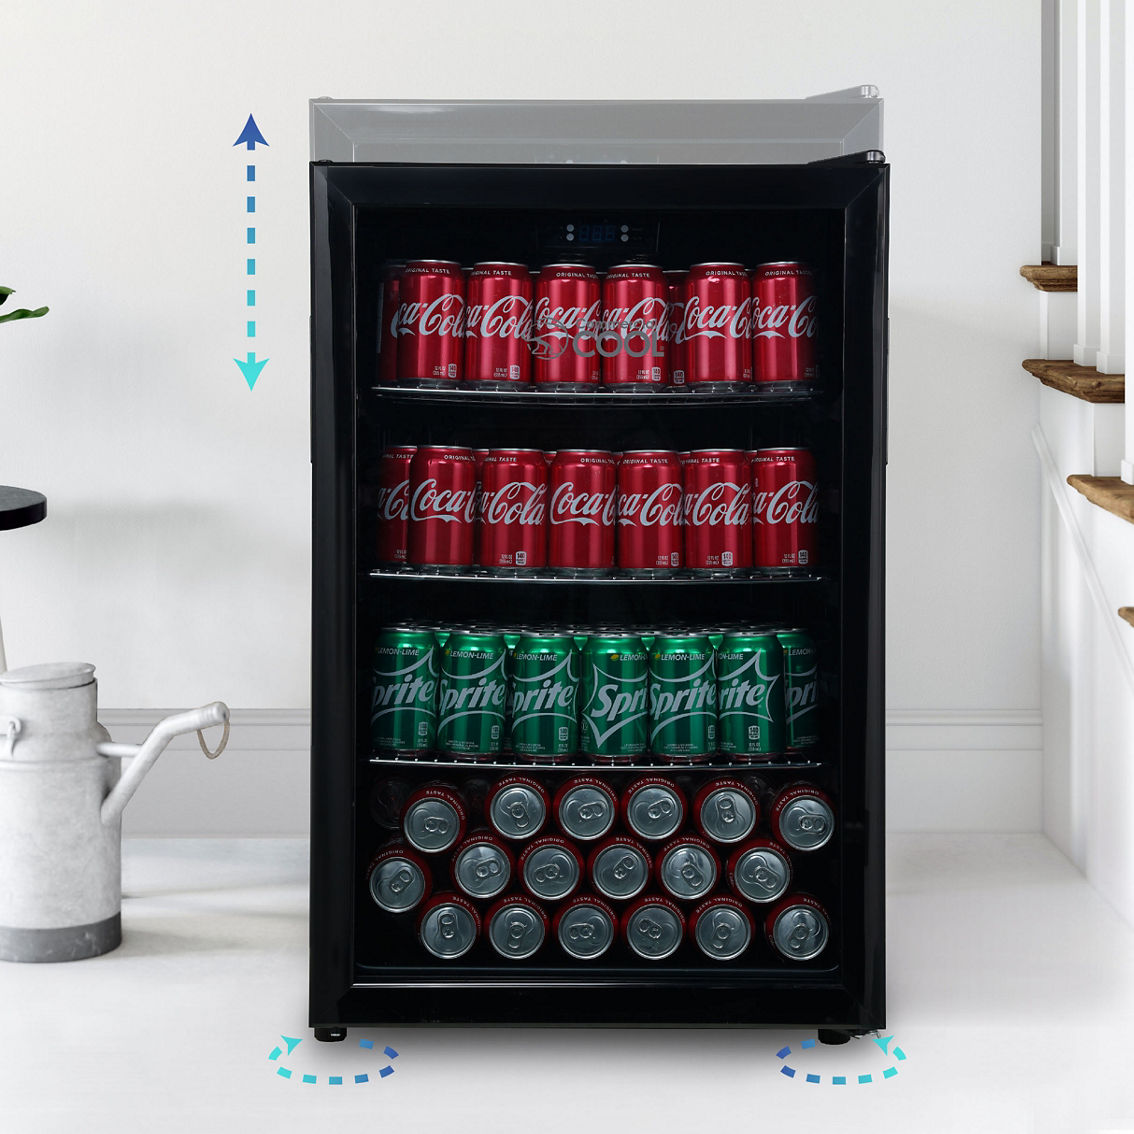 Commercial Cool 4.4 cu. ft. Digital Beverage Cooler - Image 3 of 7